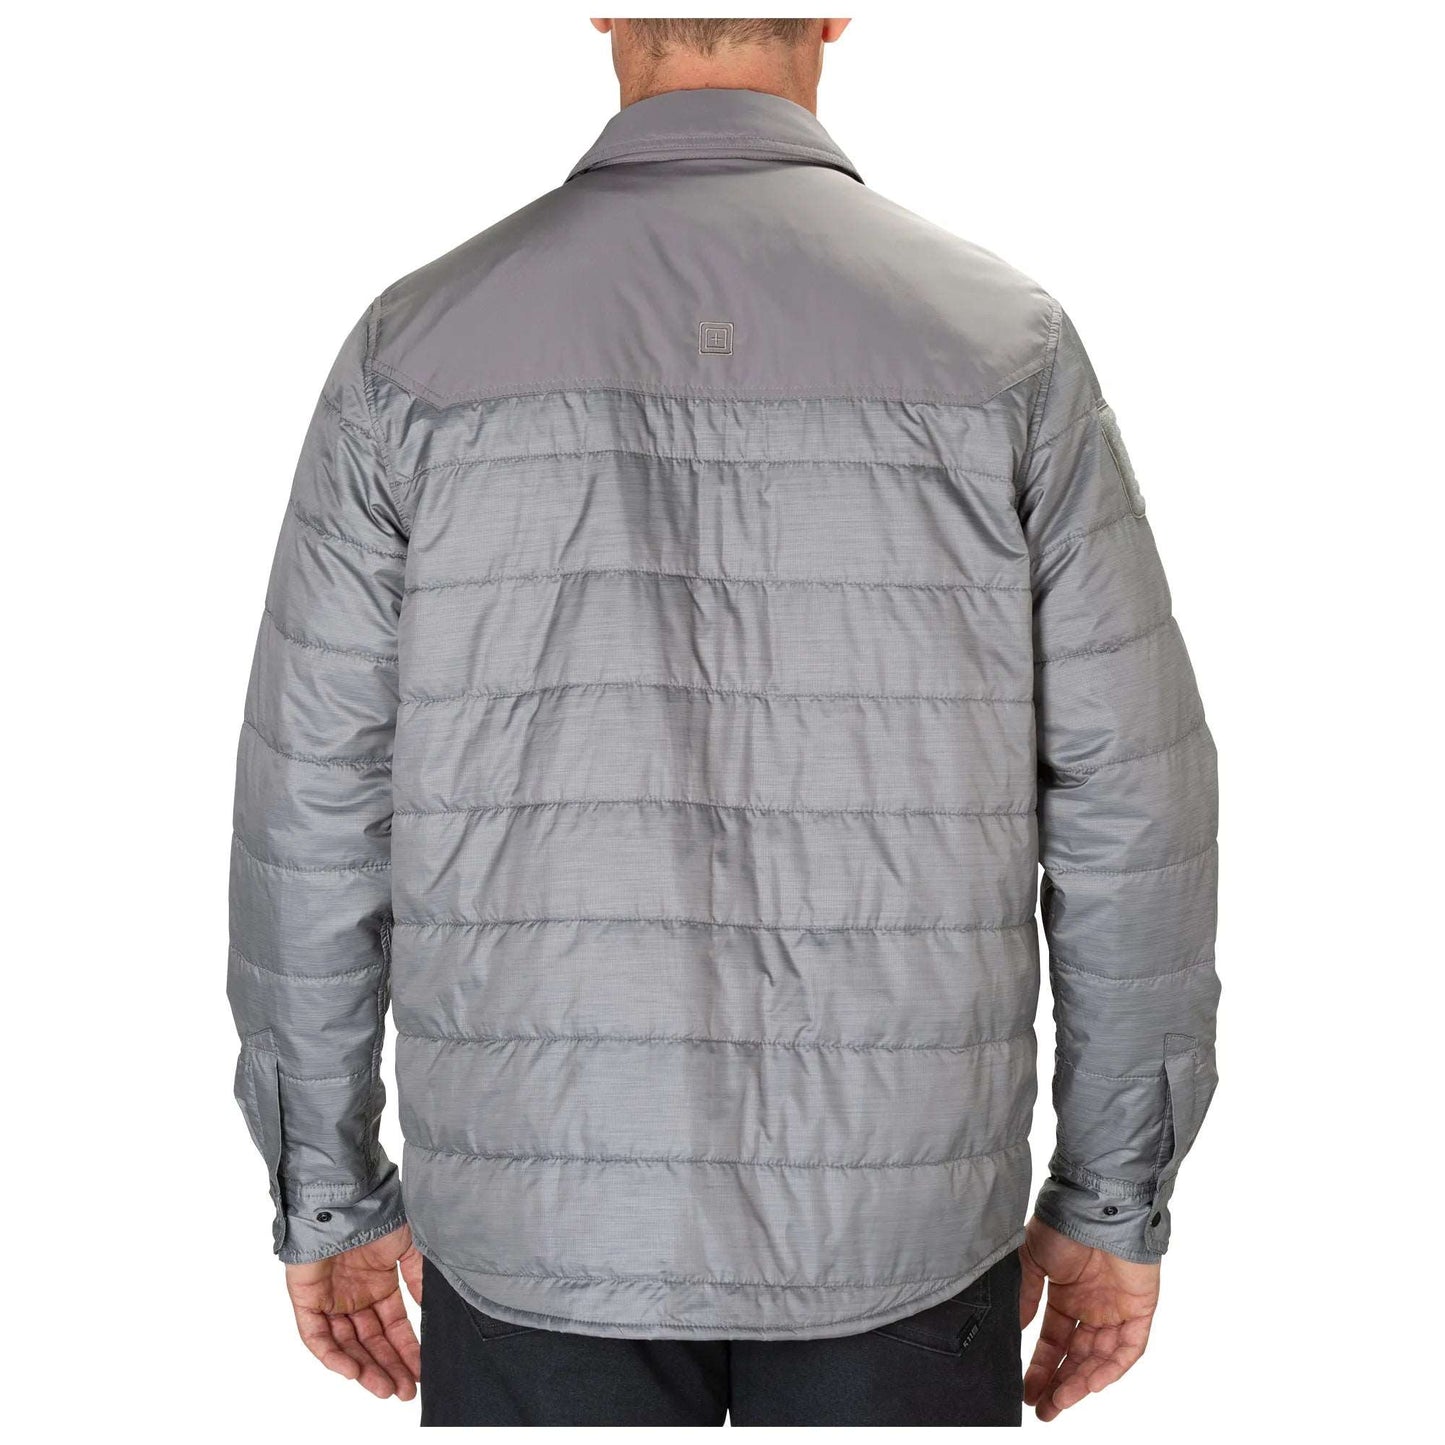 5.11 Tactical Peninsula Insulator Shirt Jacket